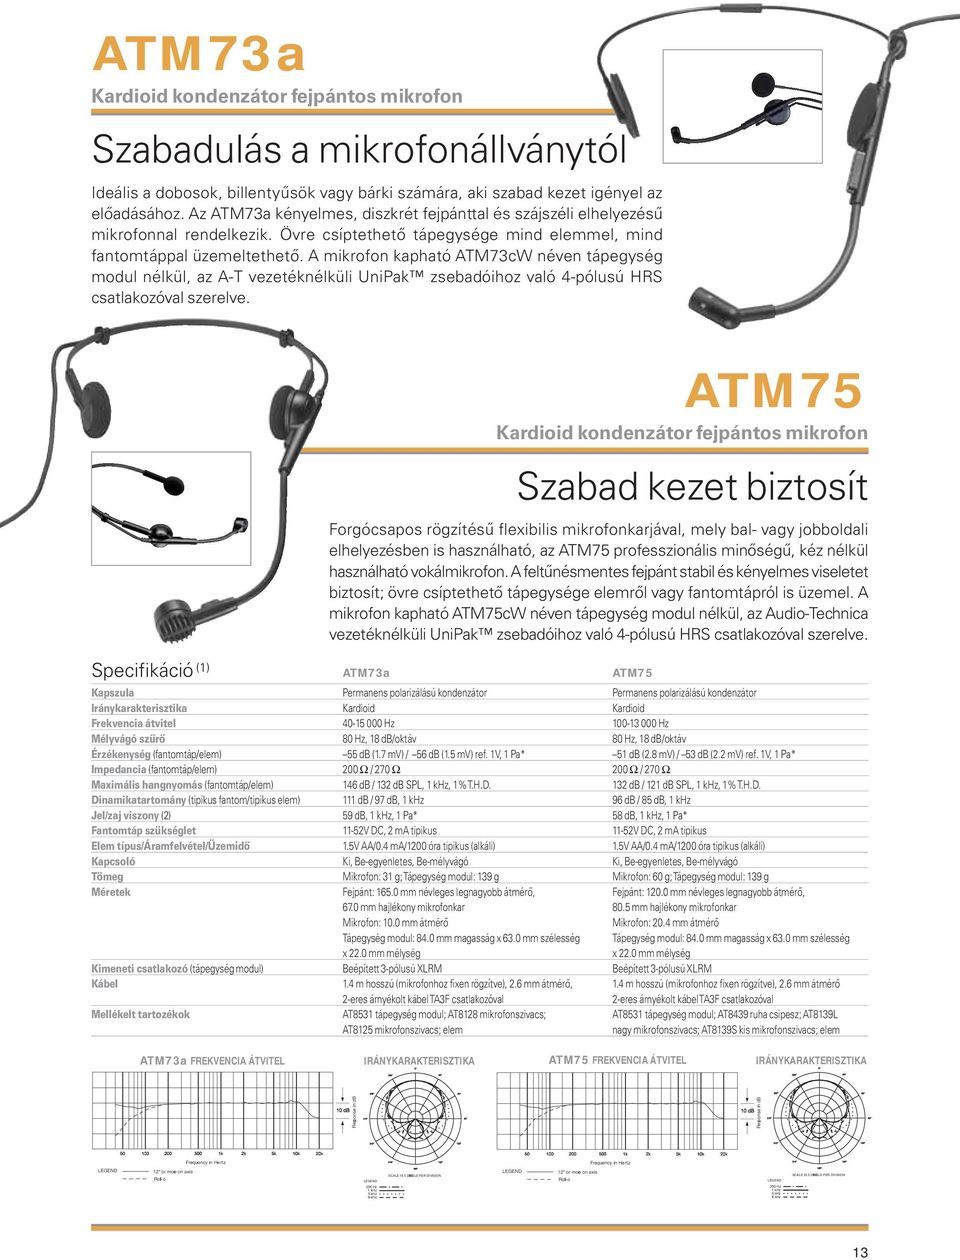 A mikrofon kapható ATM73cW néven tápegység modul nélkül, az A-T vezetéknélküli UniPak zsebadóihoz való 4-pólusú HRS csatlakozóval szerelve.